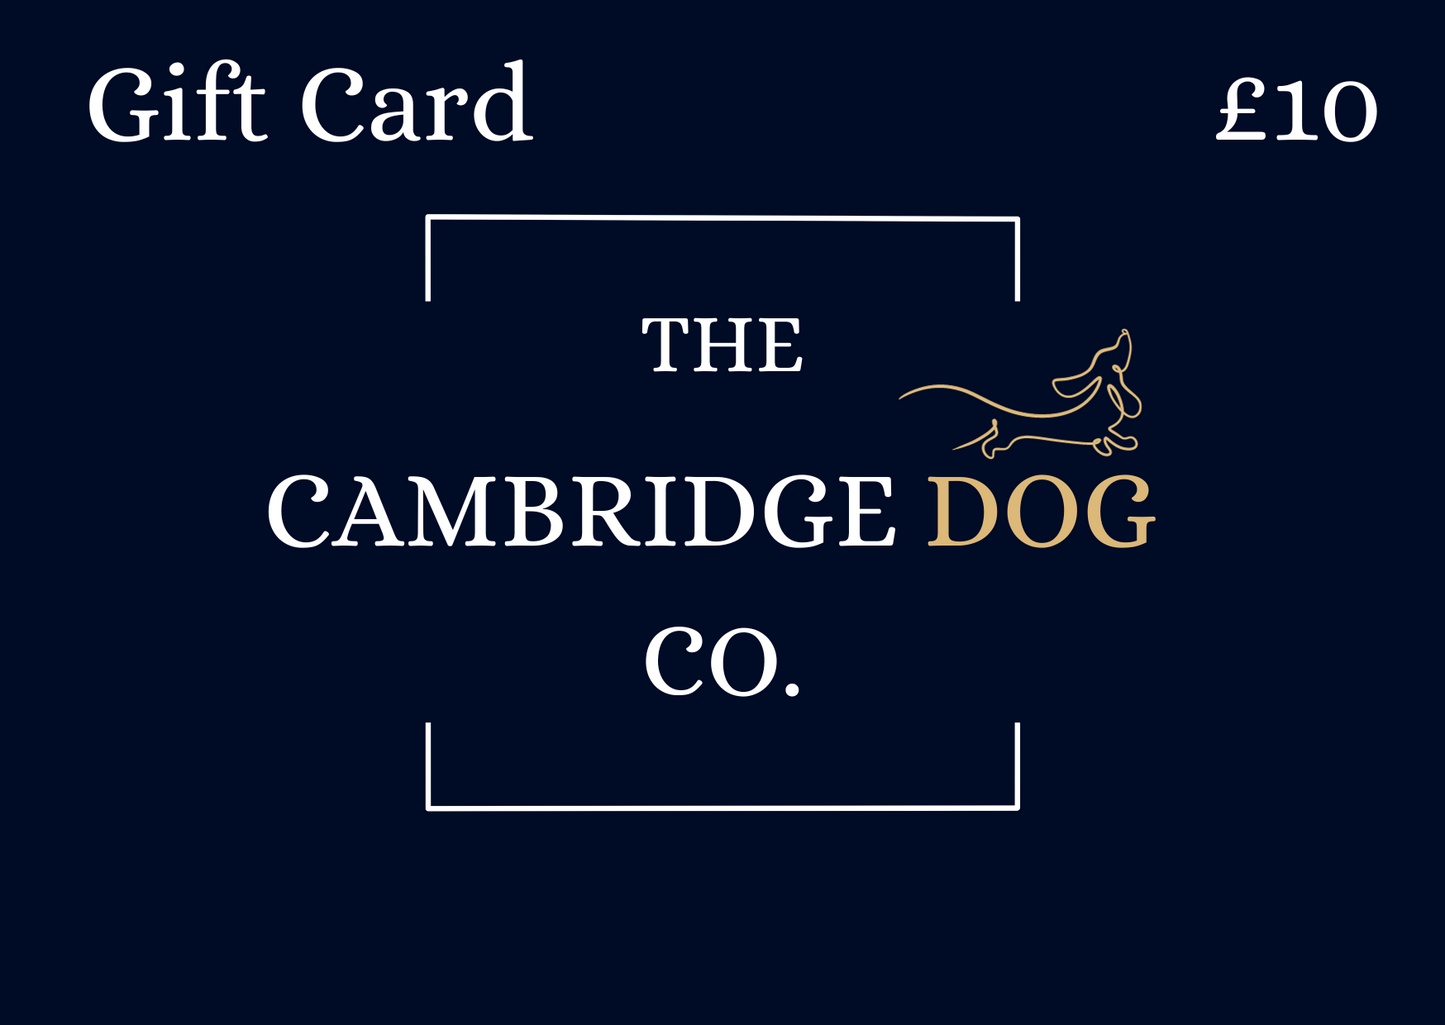 The Cambridge Dog Co.